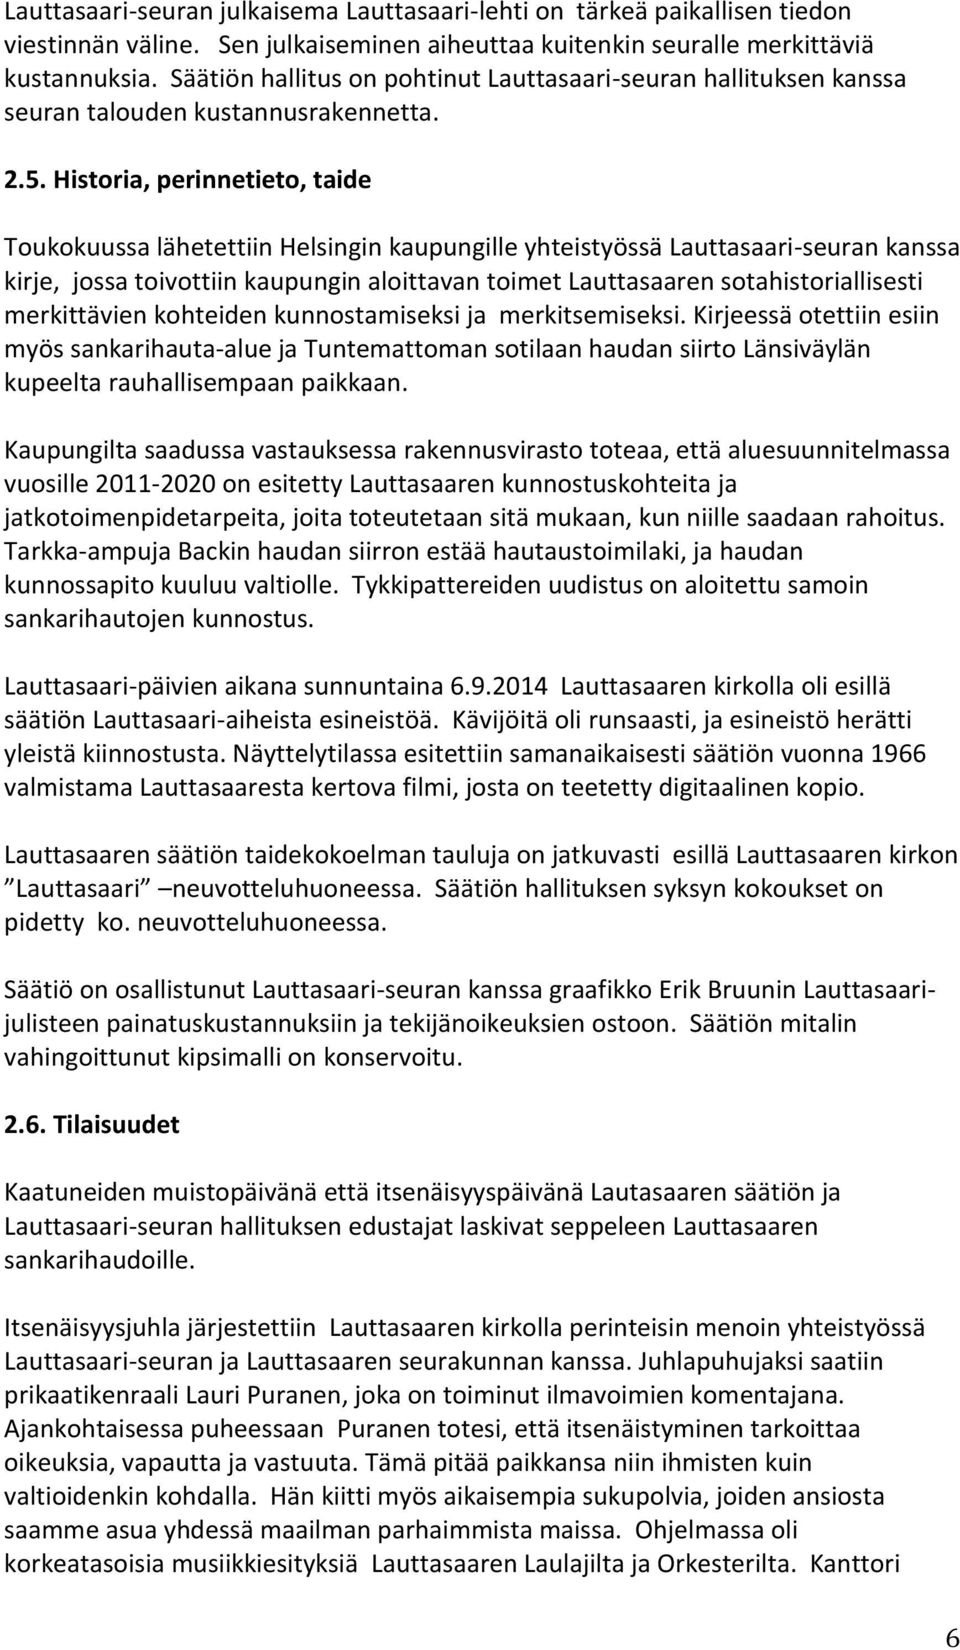 Historia, perinnetieto, taide Toukokuussa lähetettiin Helsingin kaupungille yhteistyössä Lauttasaari-seuran kanssa kirje, jossa toivottiin kaupungin aloittavan toimet Lauttasaaren